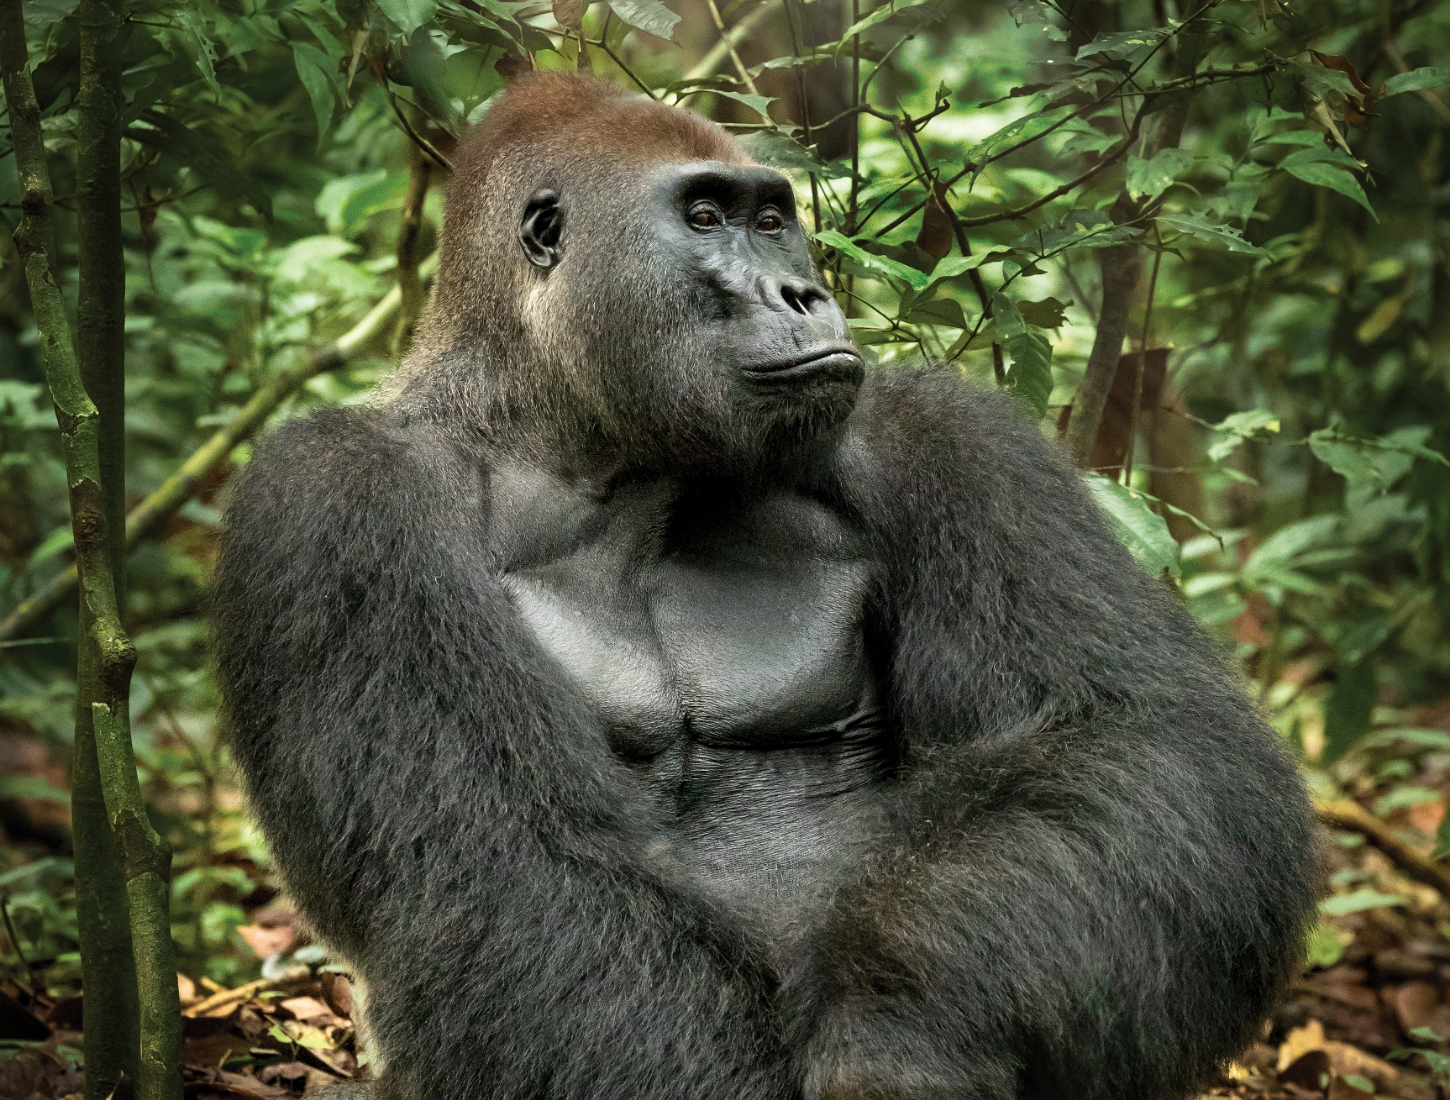 A photo of a Gorilla in a jungle_